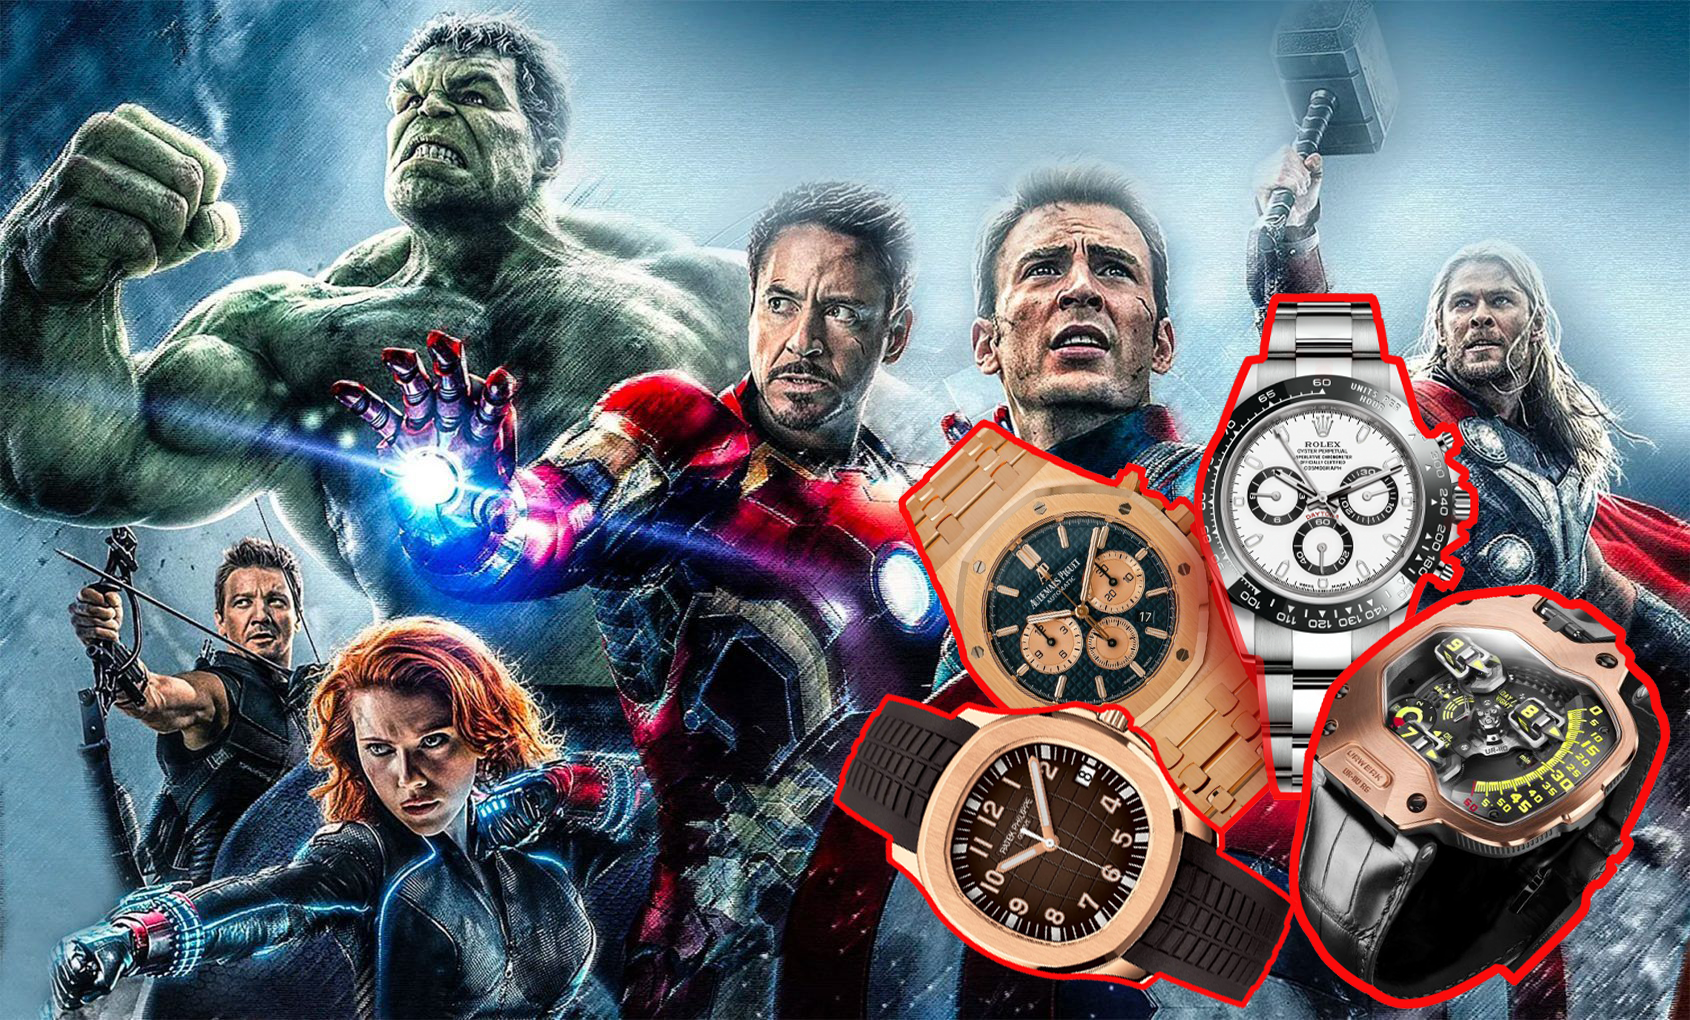 Khám phá đồng hồ đeo tay của dàn sao 'Avengers' ngoài đời thực 